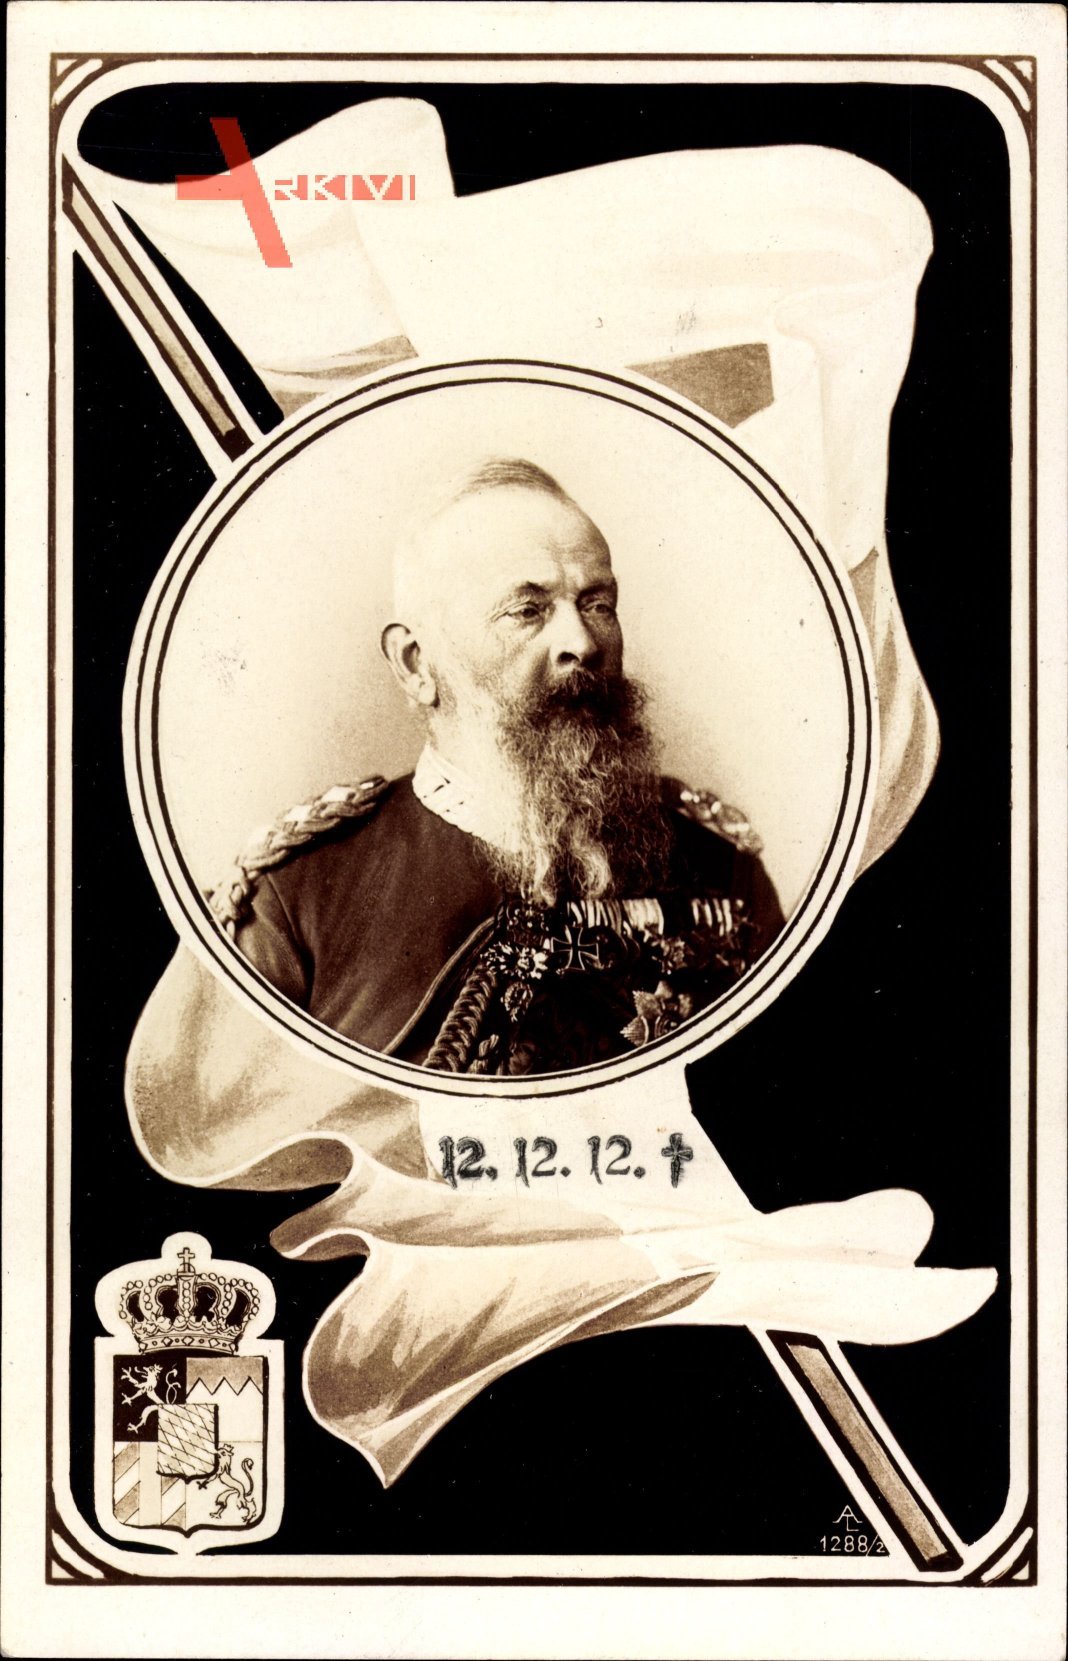 Wappen Prinzregent Luitpold von Bayern, gestorben 12.12.1912